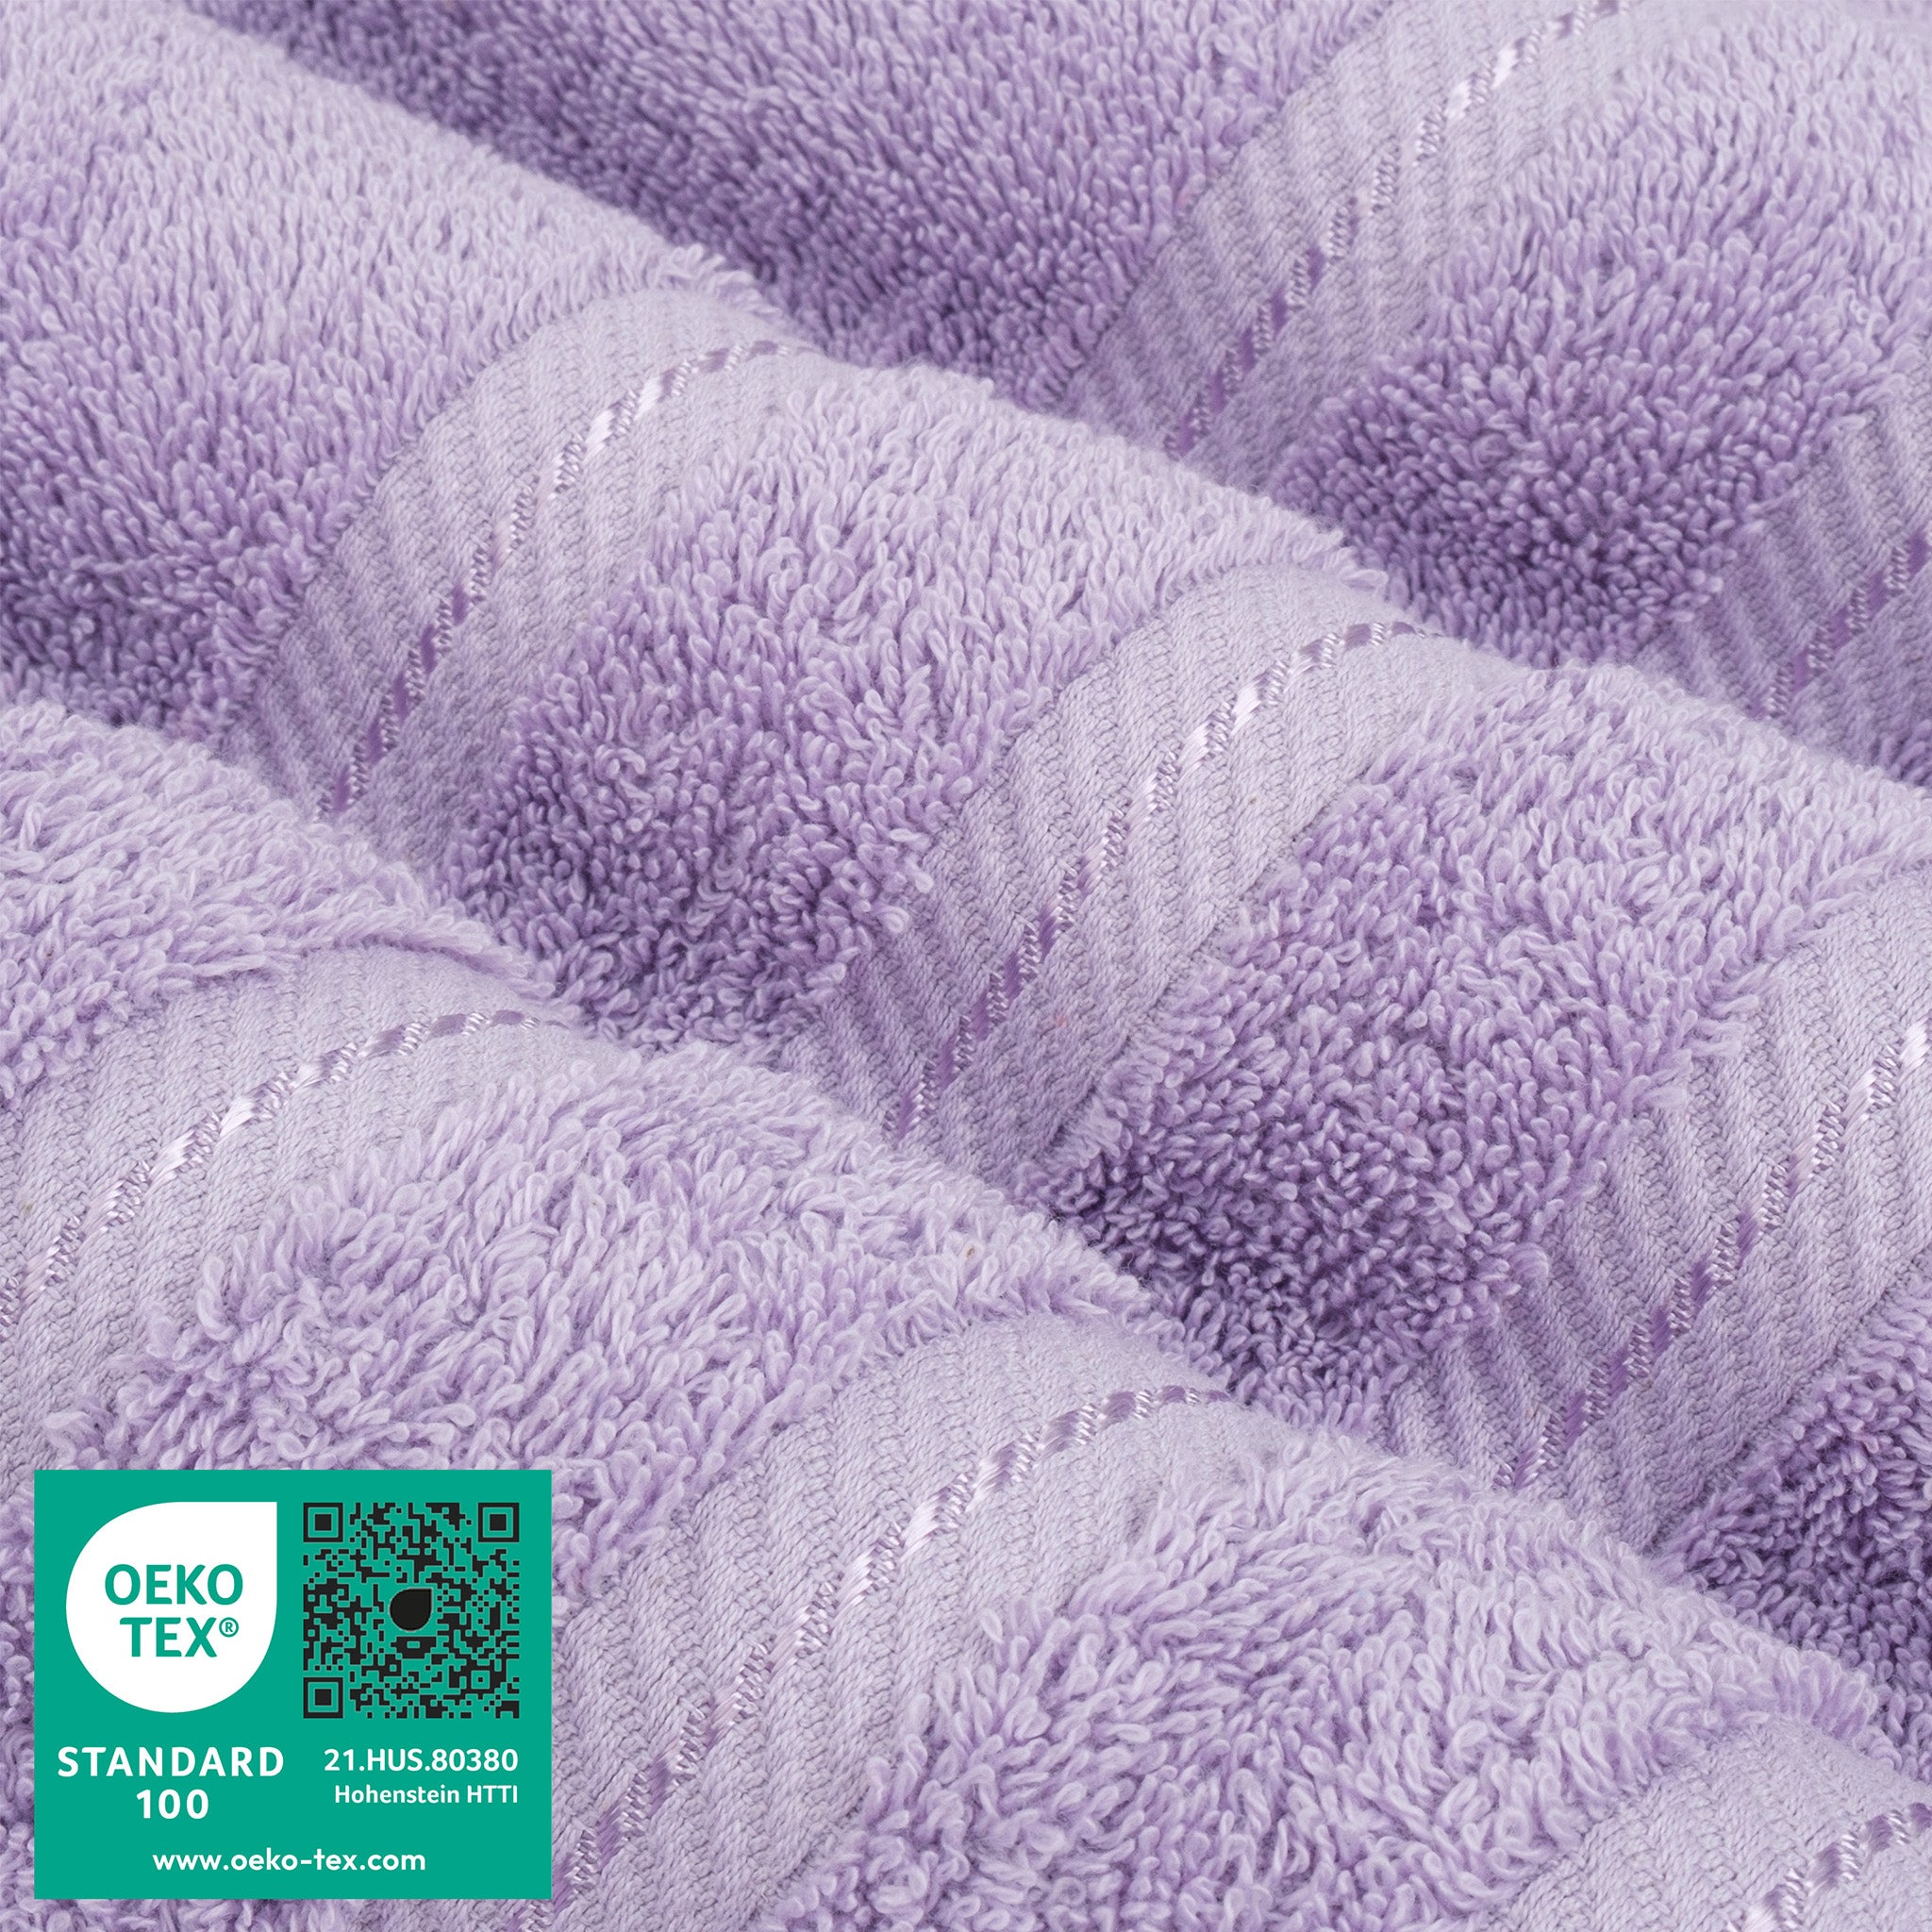 American Soft Linen 100% Turkish Cotton 4 Pack Bath Towel Set Wholesale lilac-3